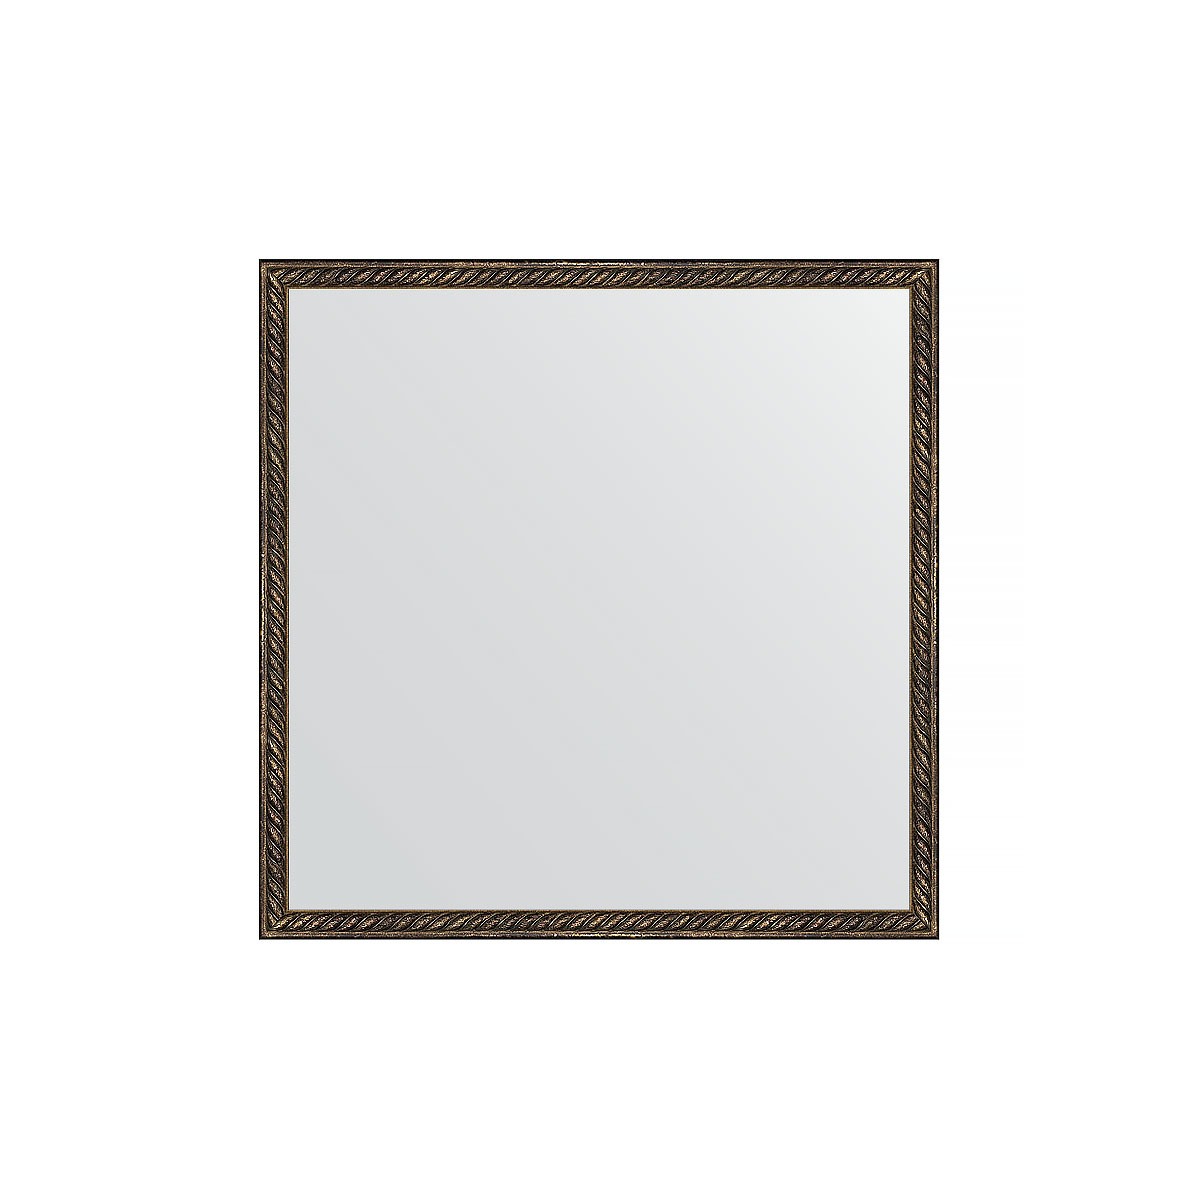 Зеркало в багетной раме Evoform витая бронза 26 мм 58х58 см зеркало 58х58 см вишня evoform definite by 0602